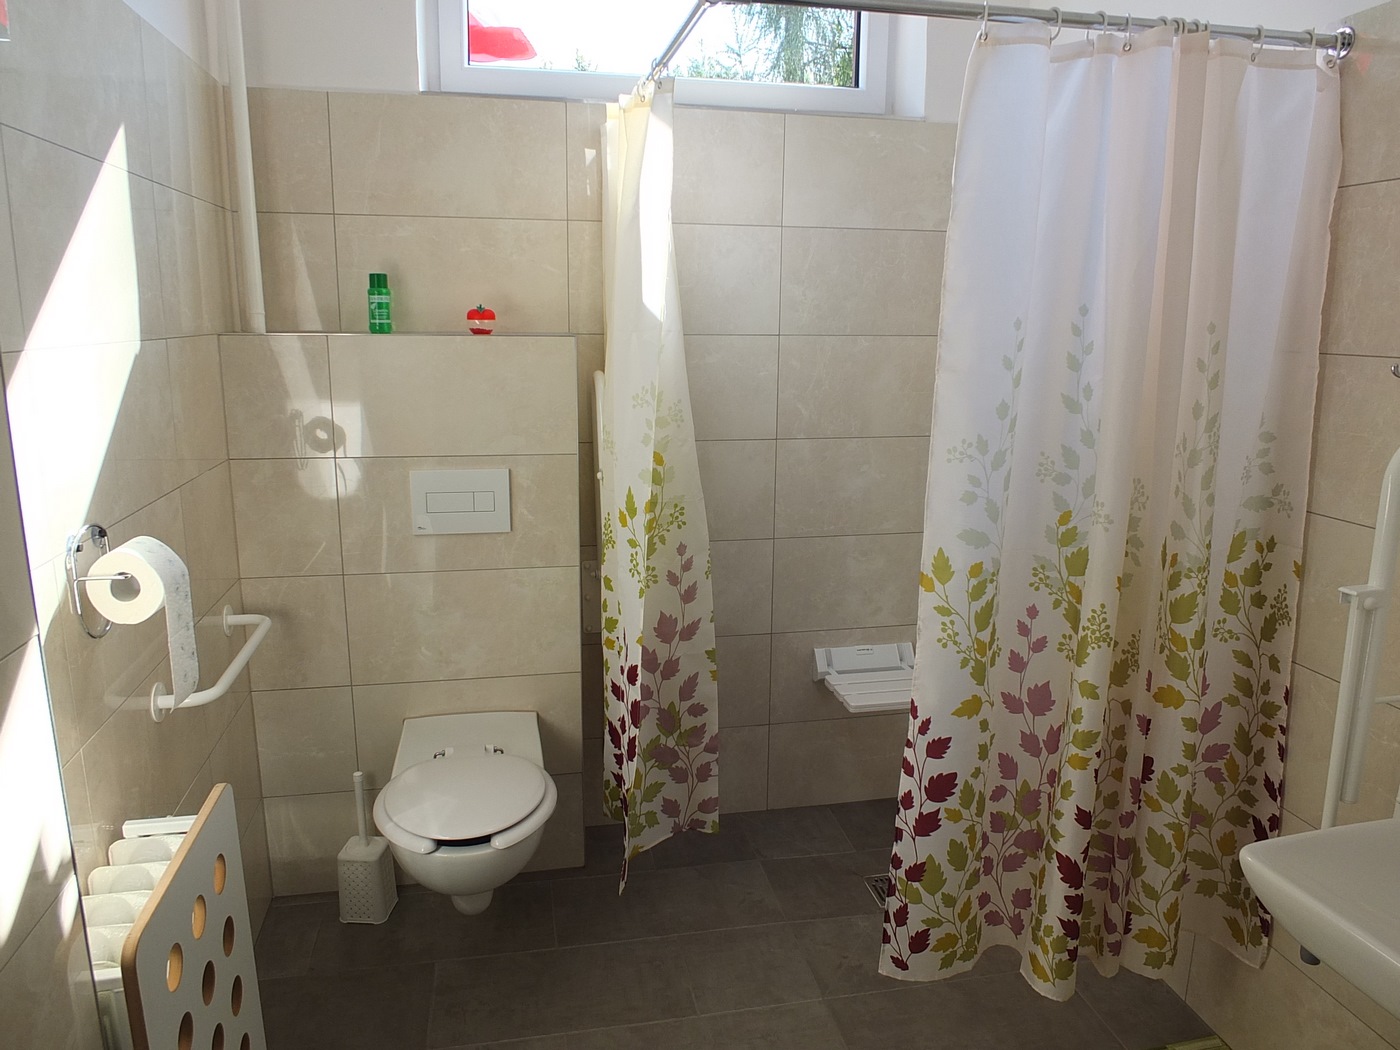 Łazienka w Dziennym Domu Pomocy dostosowana do potrzeb osób z niepełnosprawnością, brodzik niskopodłogowy, siedzisko, uchwyty, toaleta, w tle okno